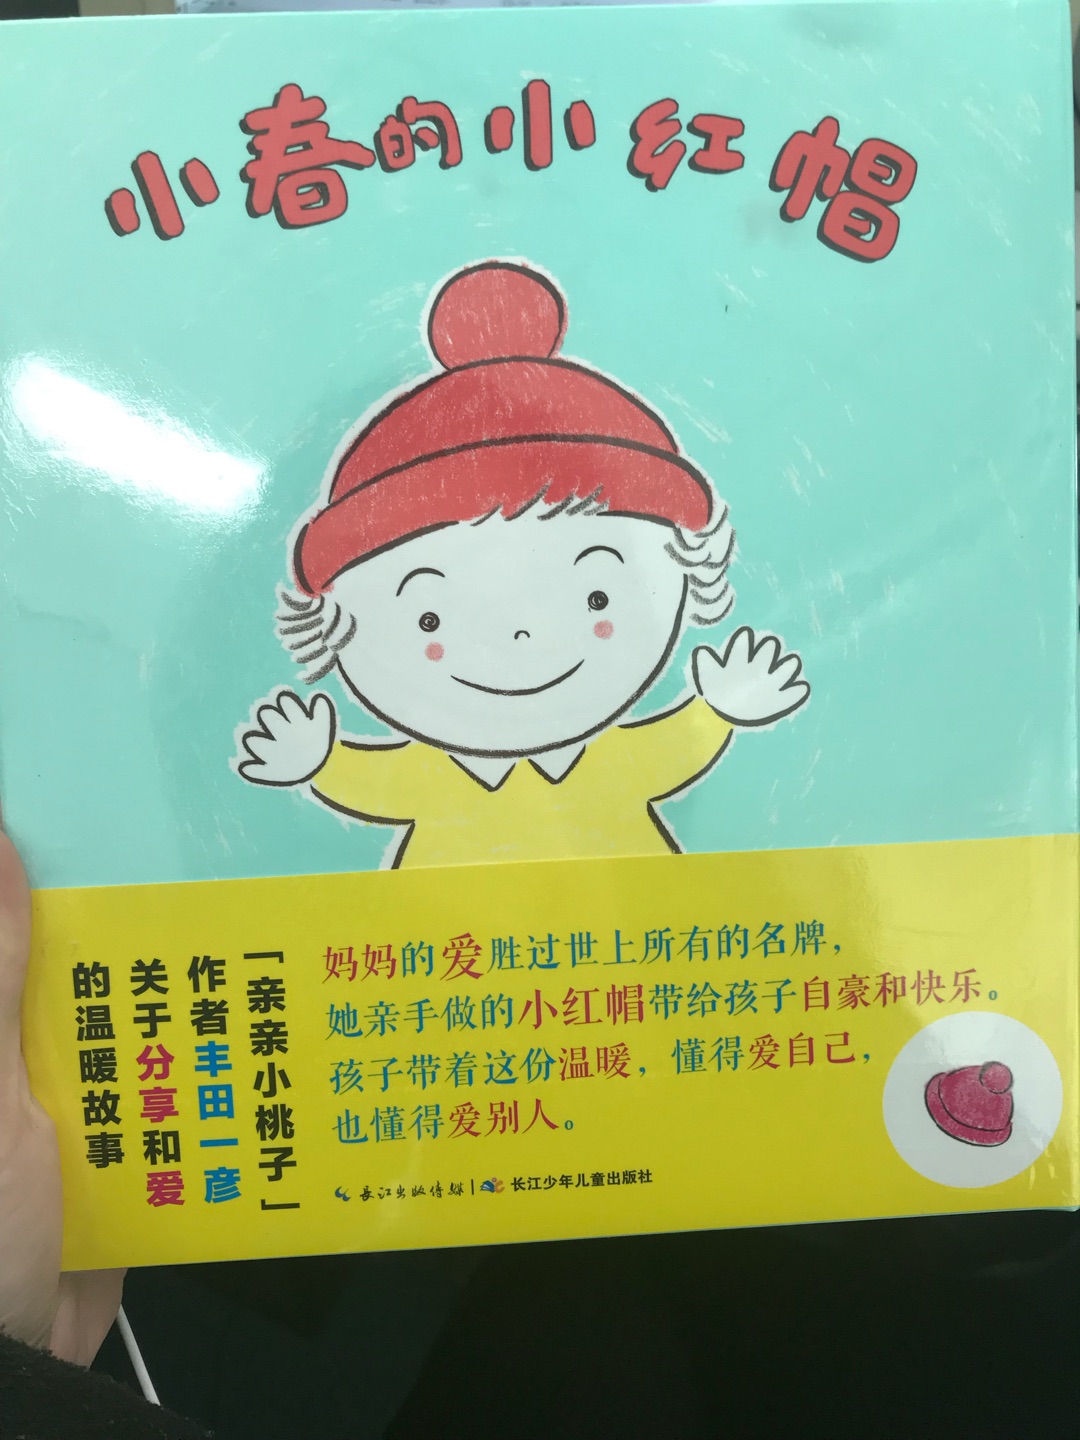 孩子喜欢小红帽，特意找了一本小红帽的书，看着还不错